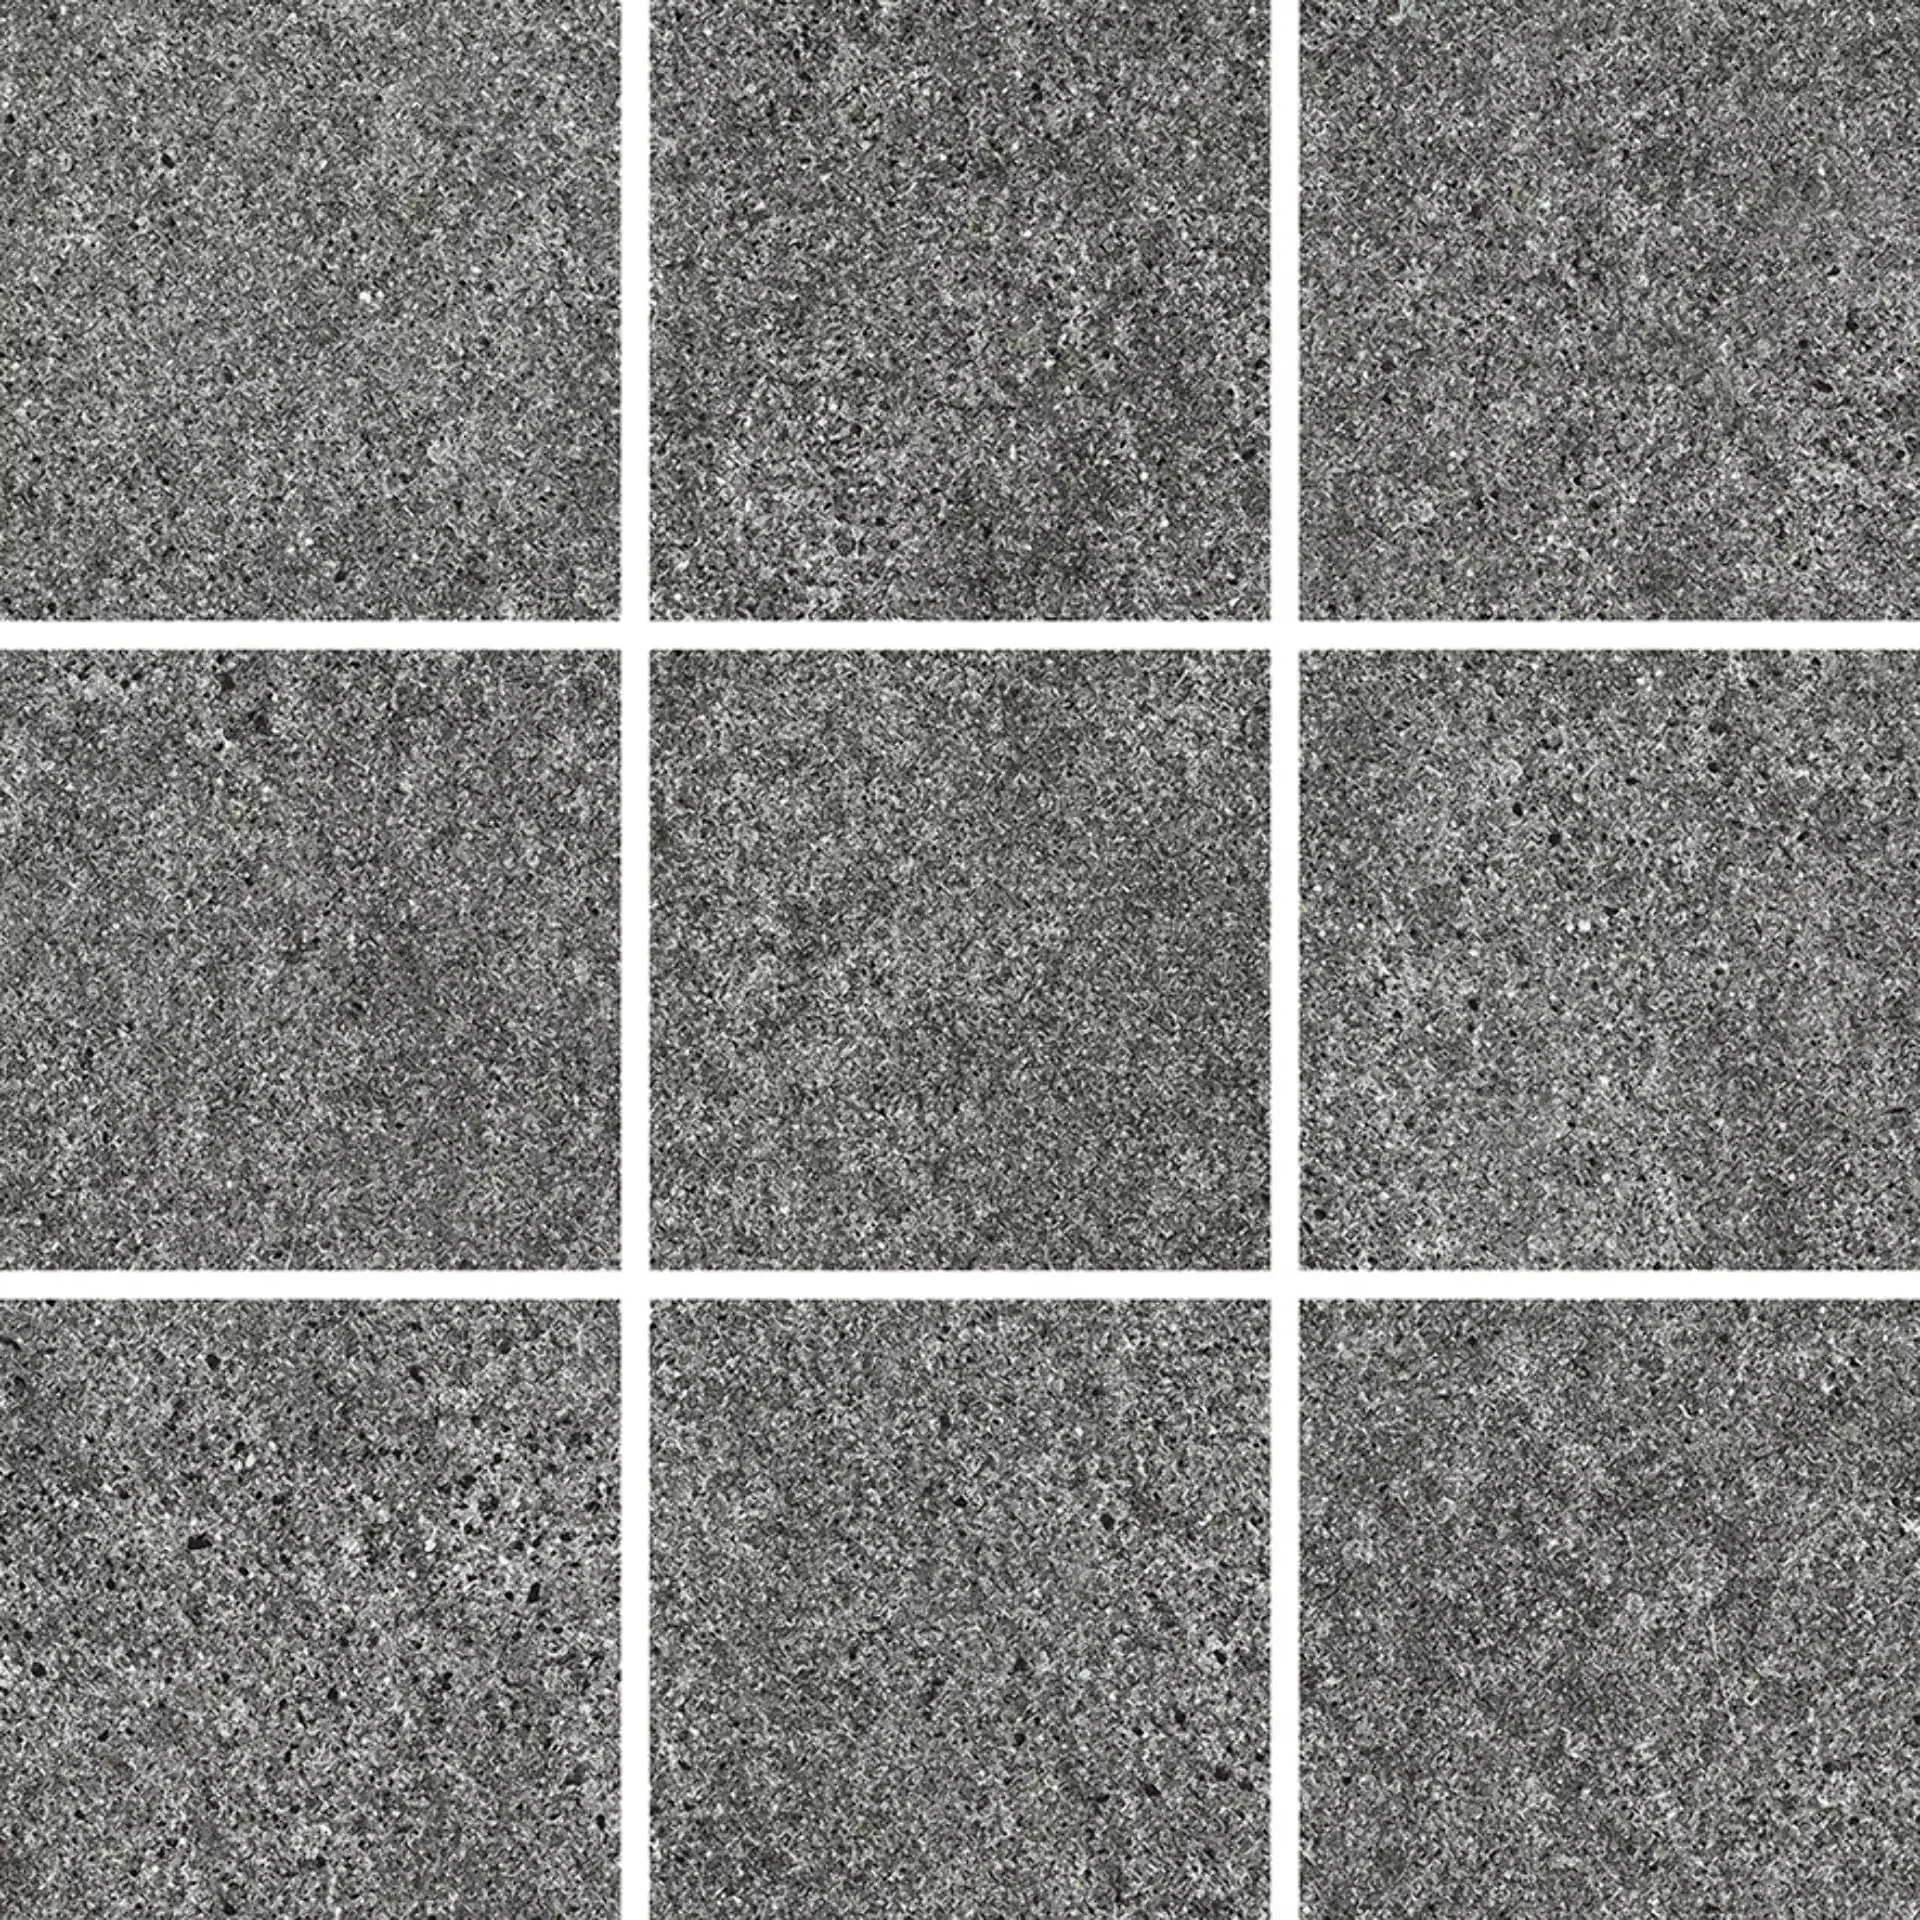 Wandfliese,Bodenfliese Villeroy & Boch Solid Tones Dark Stone Matt Dark Stone 2012-PS62 matt 10x10cm rektifiziert 10mm